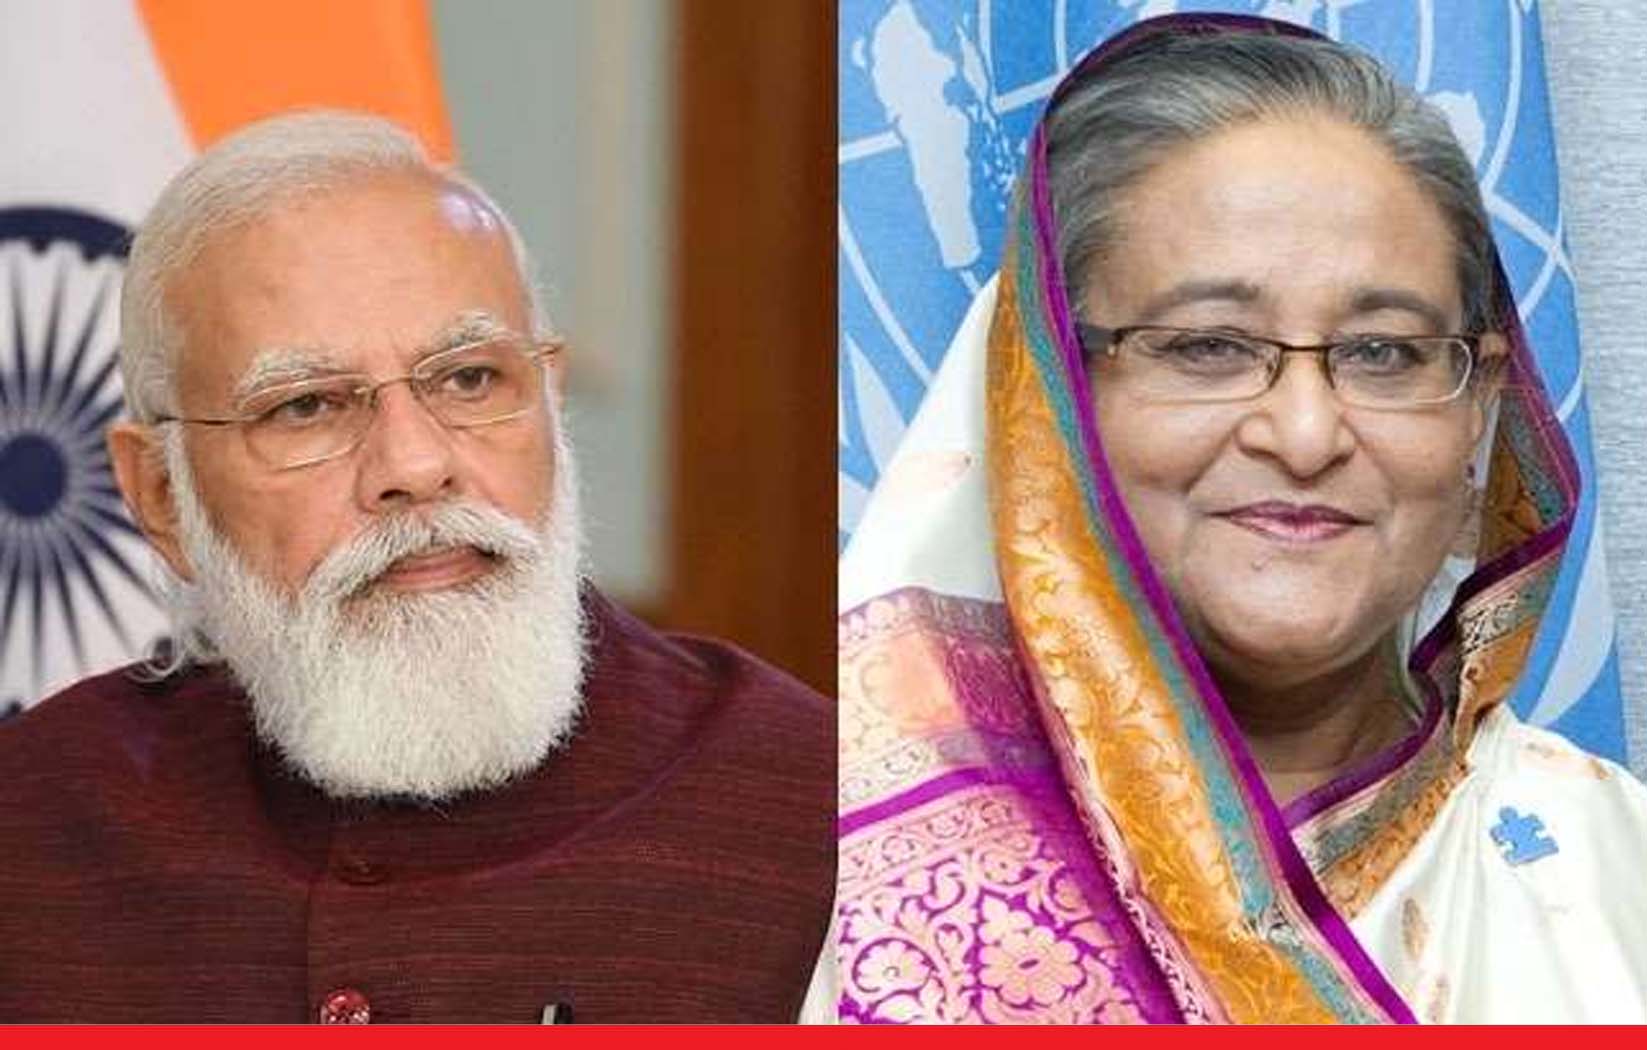 भारत ने बांग्लादेश के नागरिकों को भी किया रेस्क्यू, पीएम शेख हसीना बोलीं- थैंक्यू मोदी जी